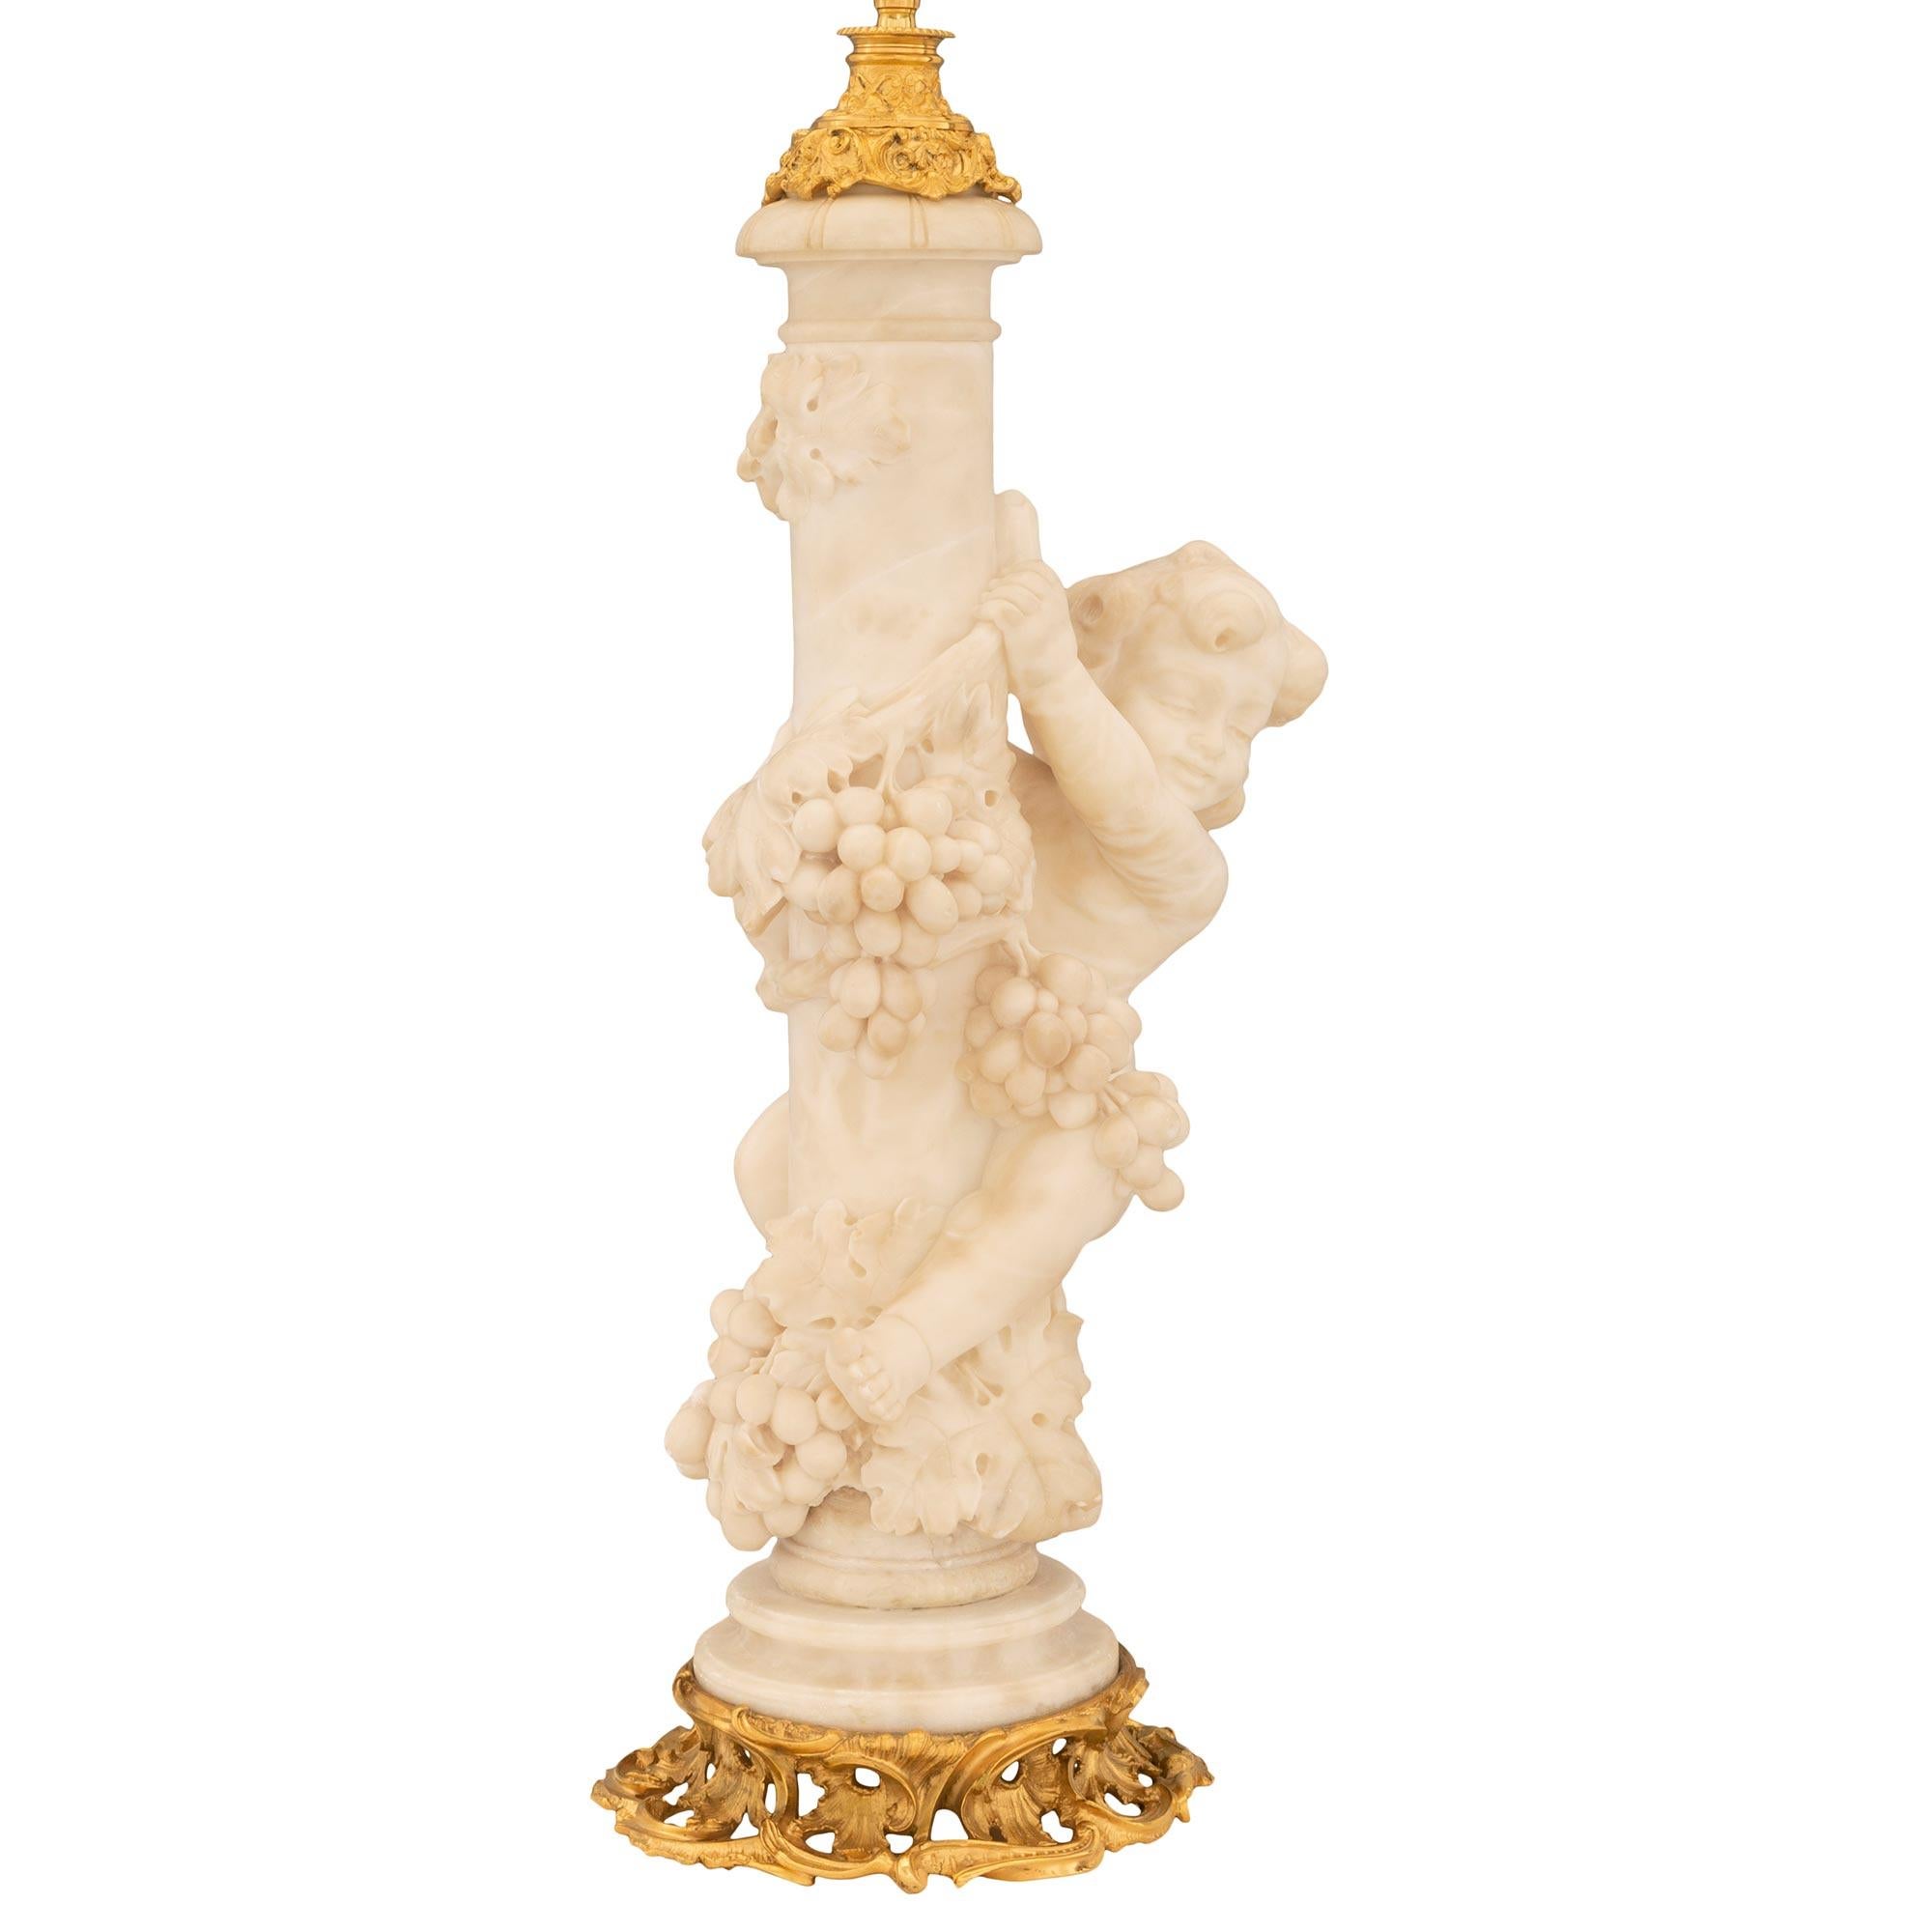 Exceptionnelle et unique lampe en bronze doré et en albâtre de style Louis XV du 19ème siècle. La lampe est surmontée d'une magnifique base en bronze doré, ajourée, à volutes et à motifs richement ciselés, dans une superbe finition satinée et